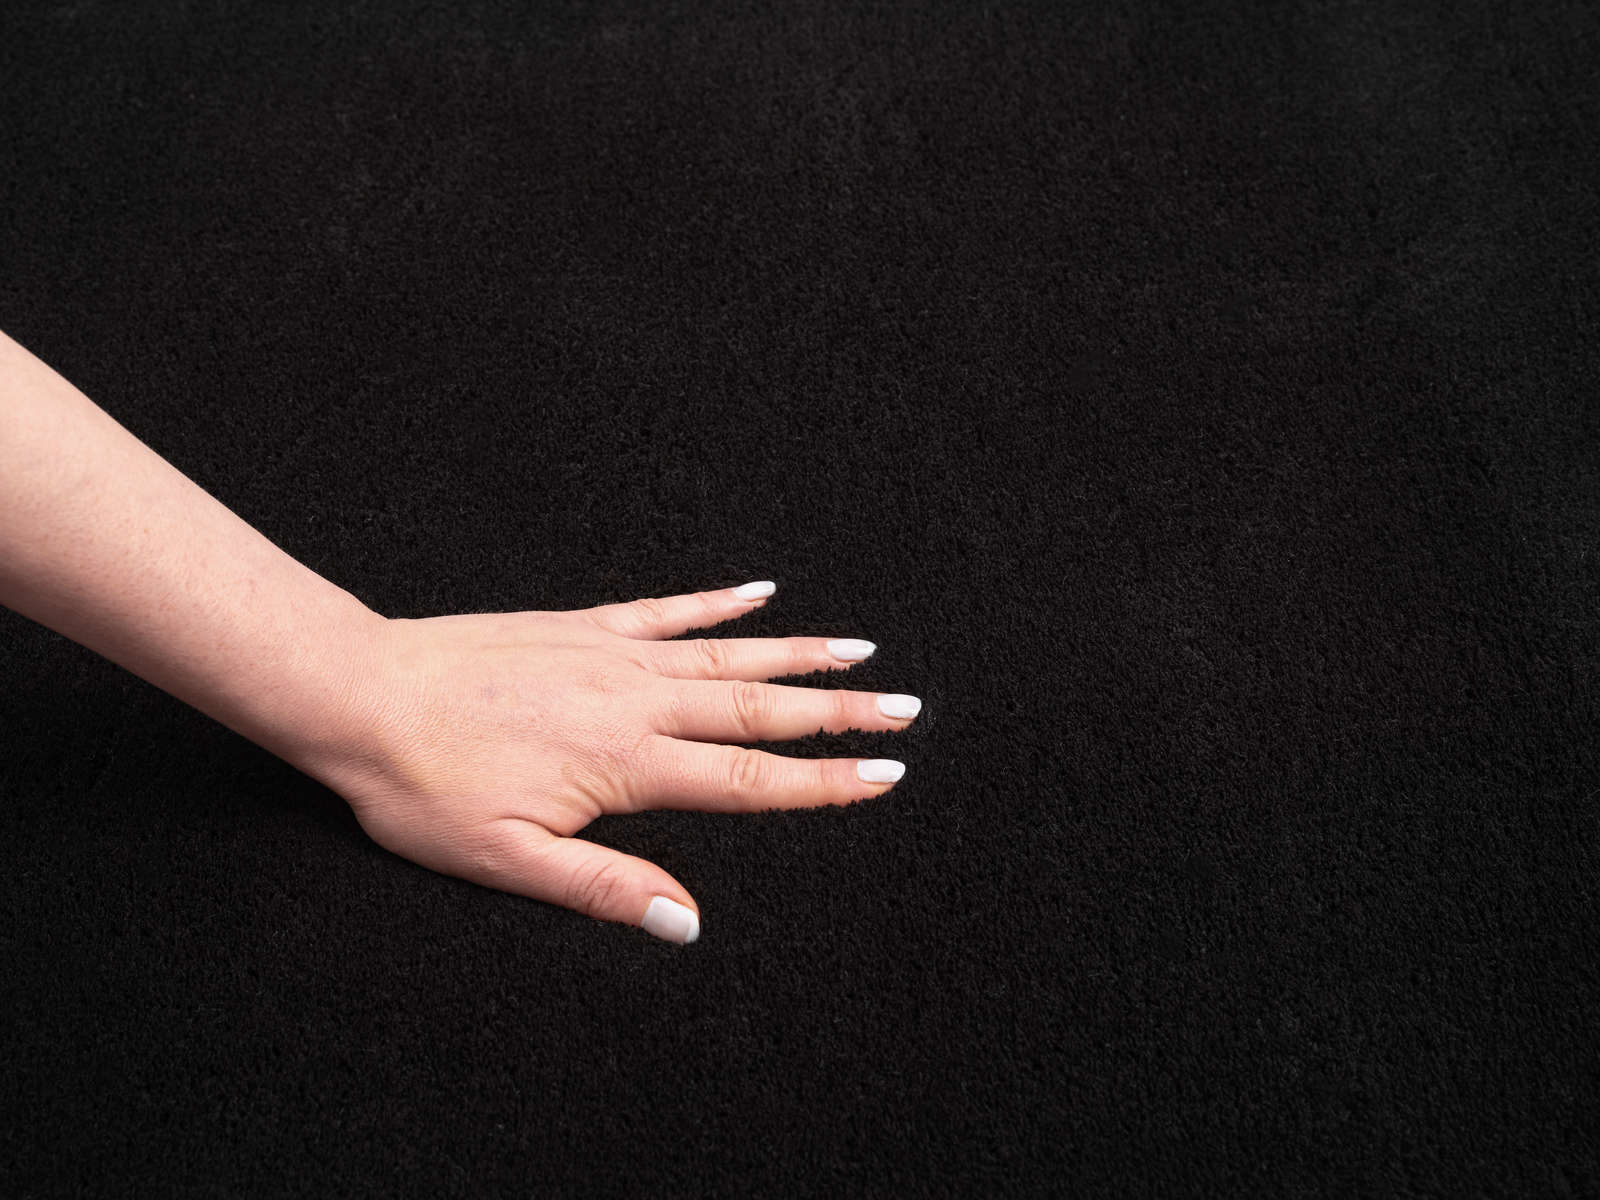             Fluweelzacht hoogpolig tapijt in zwart - 200 x 140 cm
        